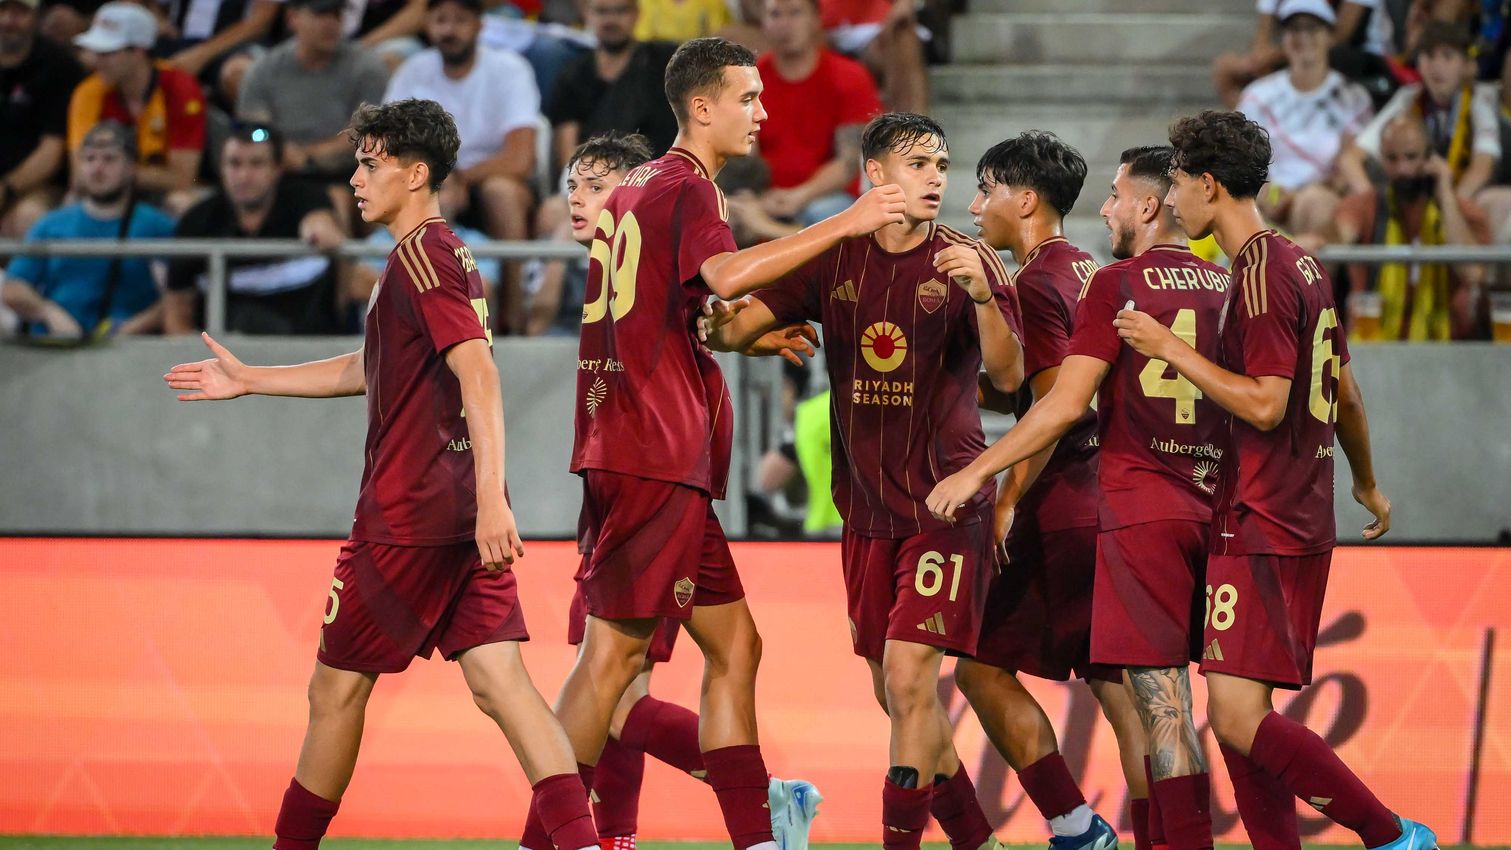 La Roma no pasa de un empate ante FC Košice en el segundo amistoso del verano; el gol de Pisilli en el 85' firma las tablas - Planeta Roma